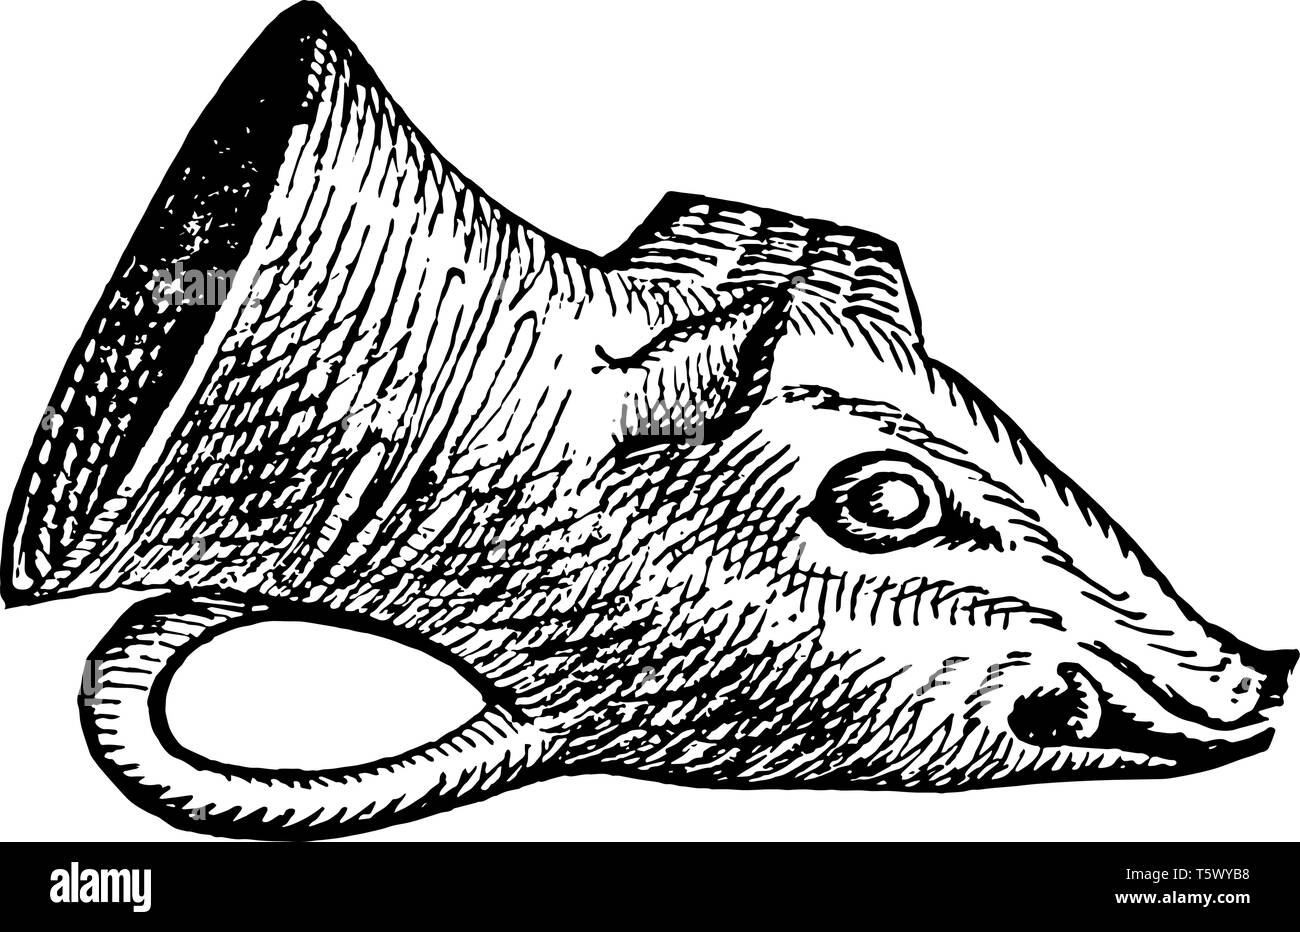 Rhyton es un tipo de vaso ceremonial, su forma de una cabeza de animal o bocina, línea vintage de dibujo o grabado. Ilustración del Vector